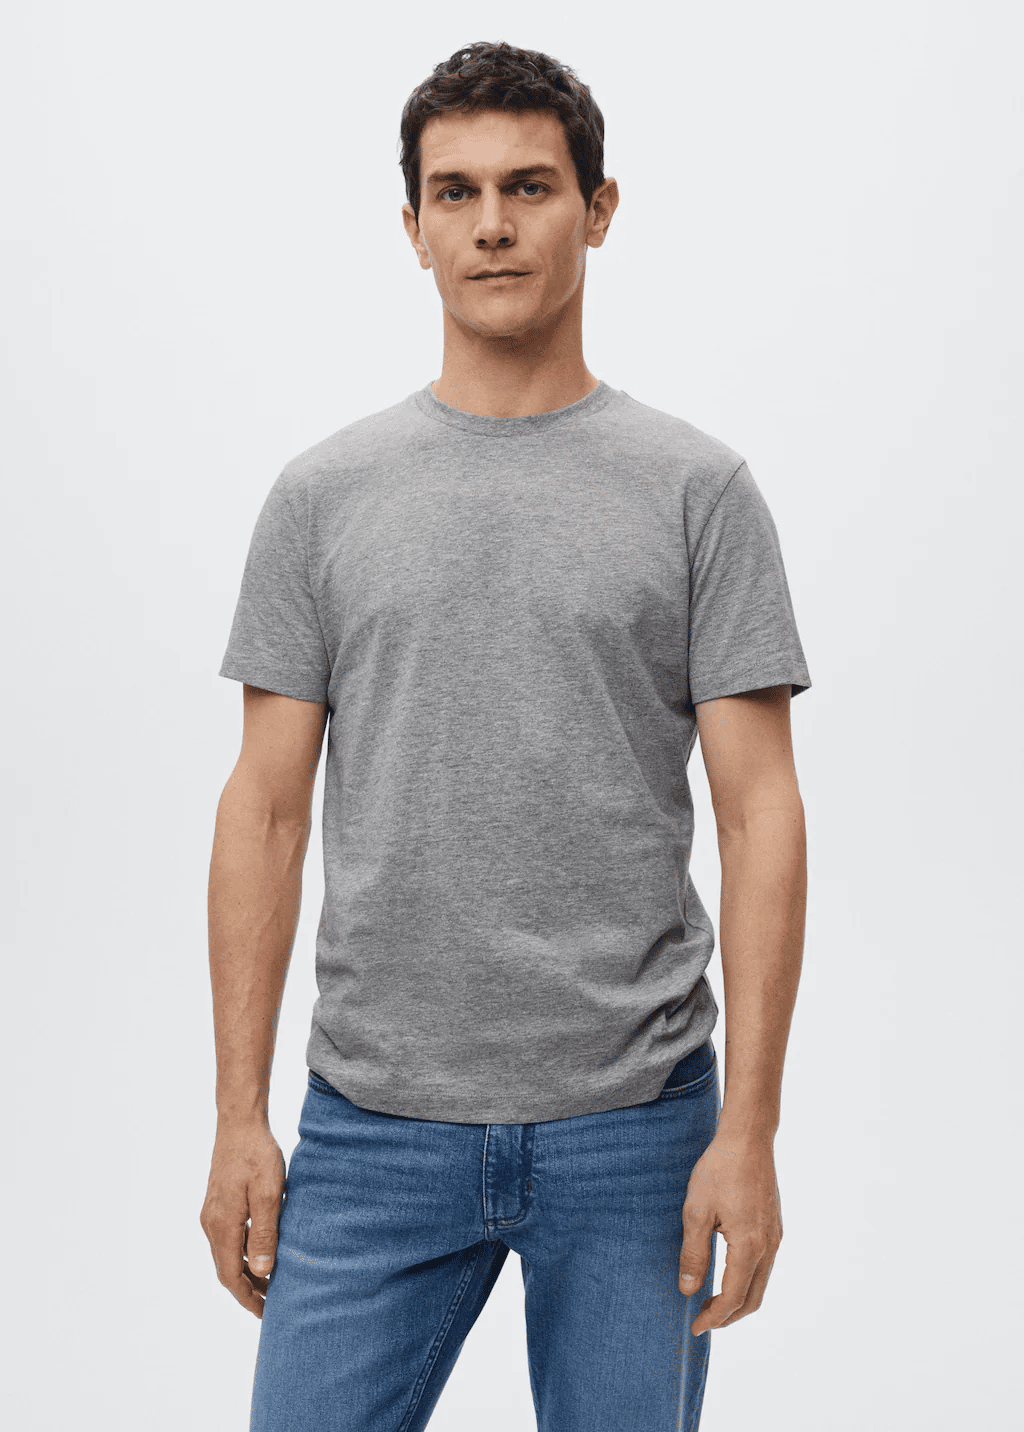 Grey color cotton basic T-shirt